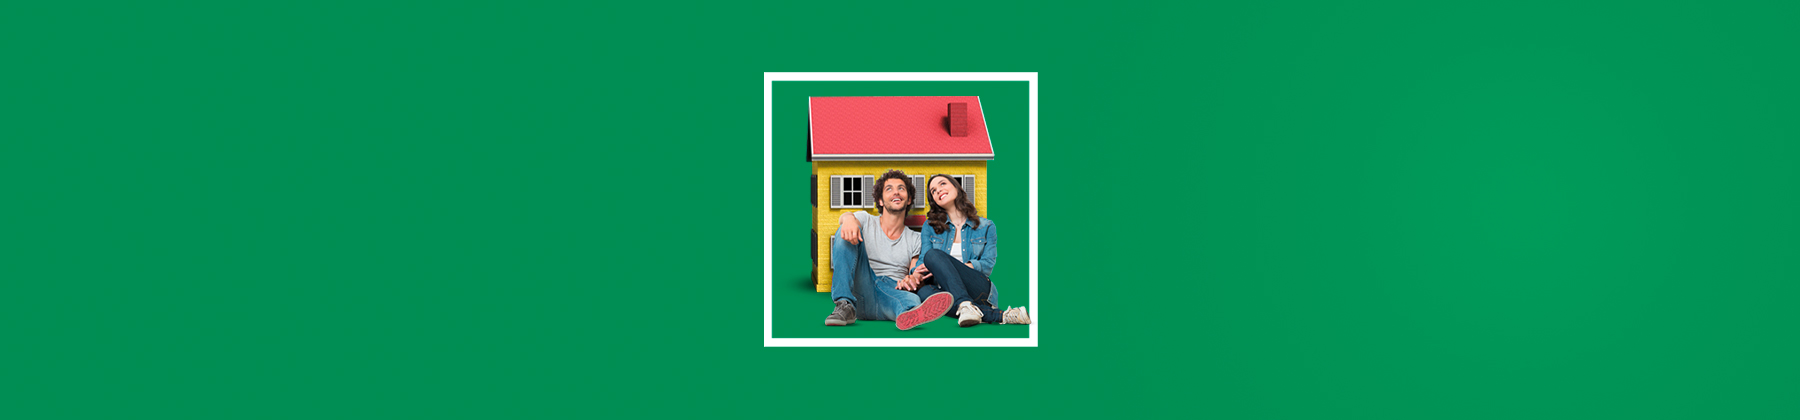 Un ragazzo e una ragazza seduti a terra si tengono per mano sorridenti, con la schiena poggiata su una casa troppo piccola